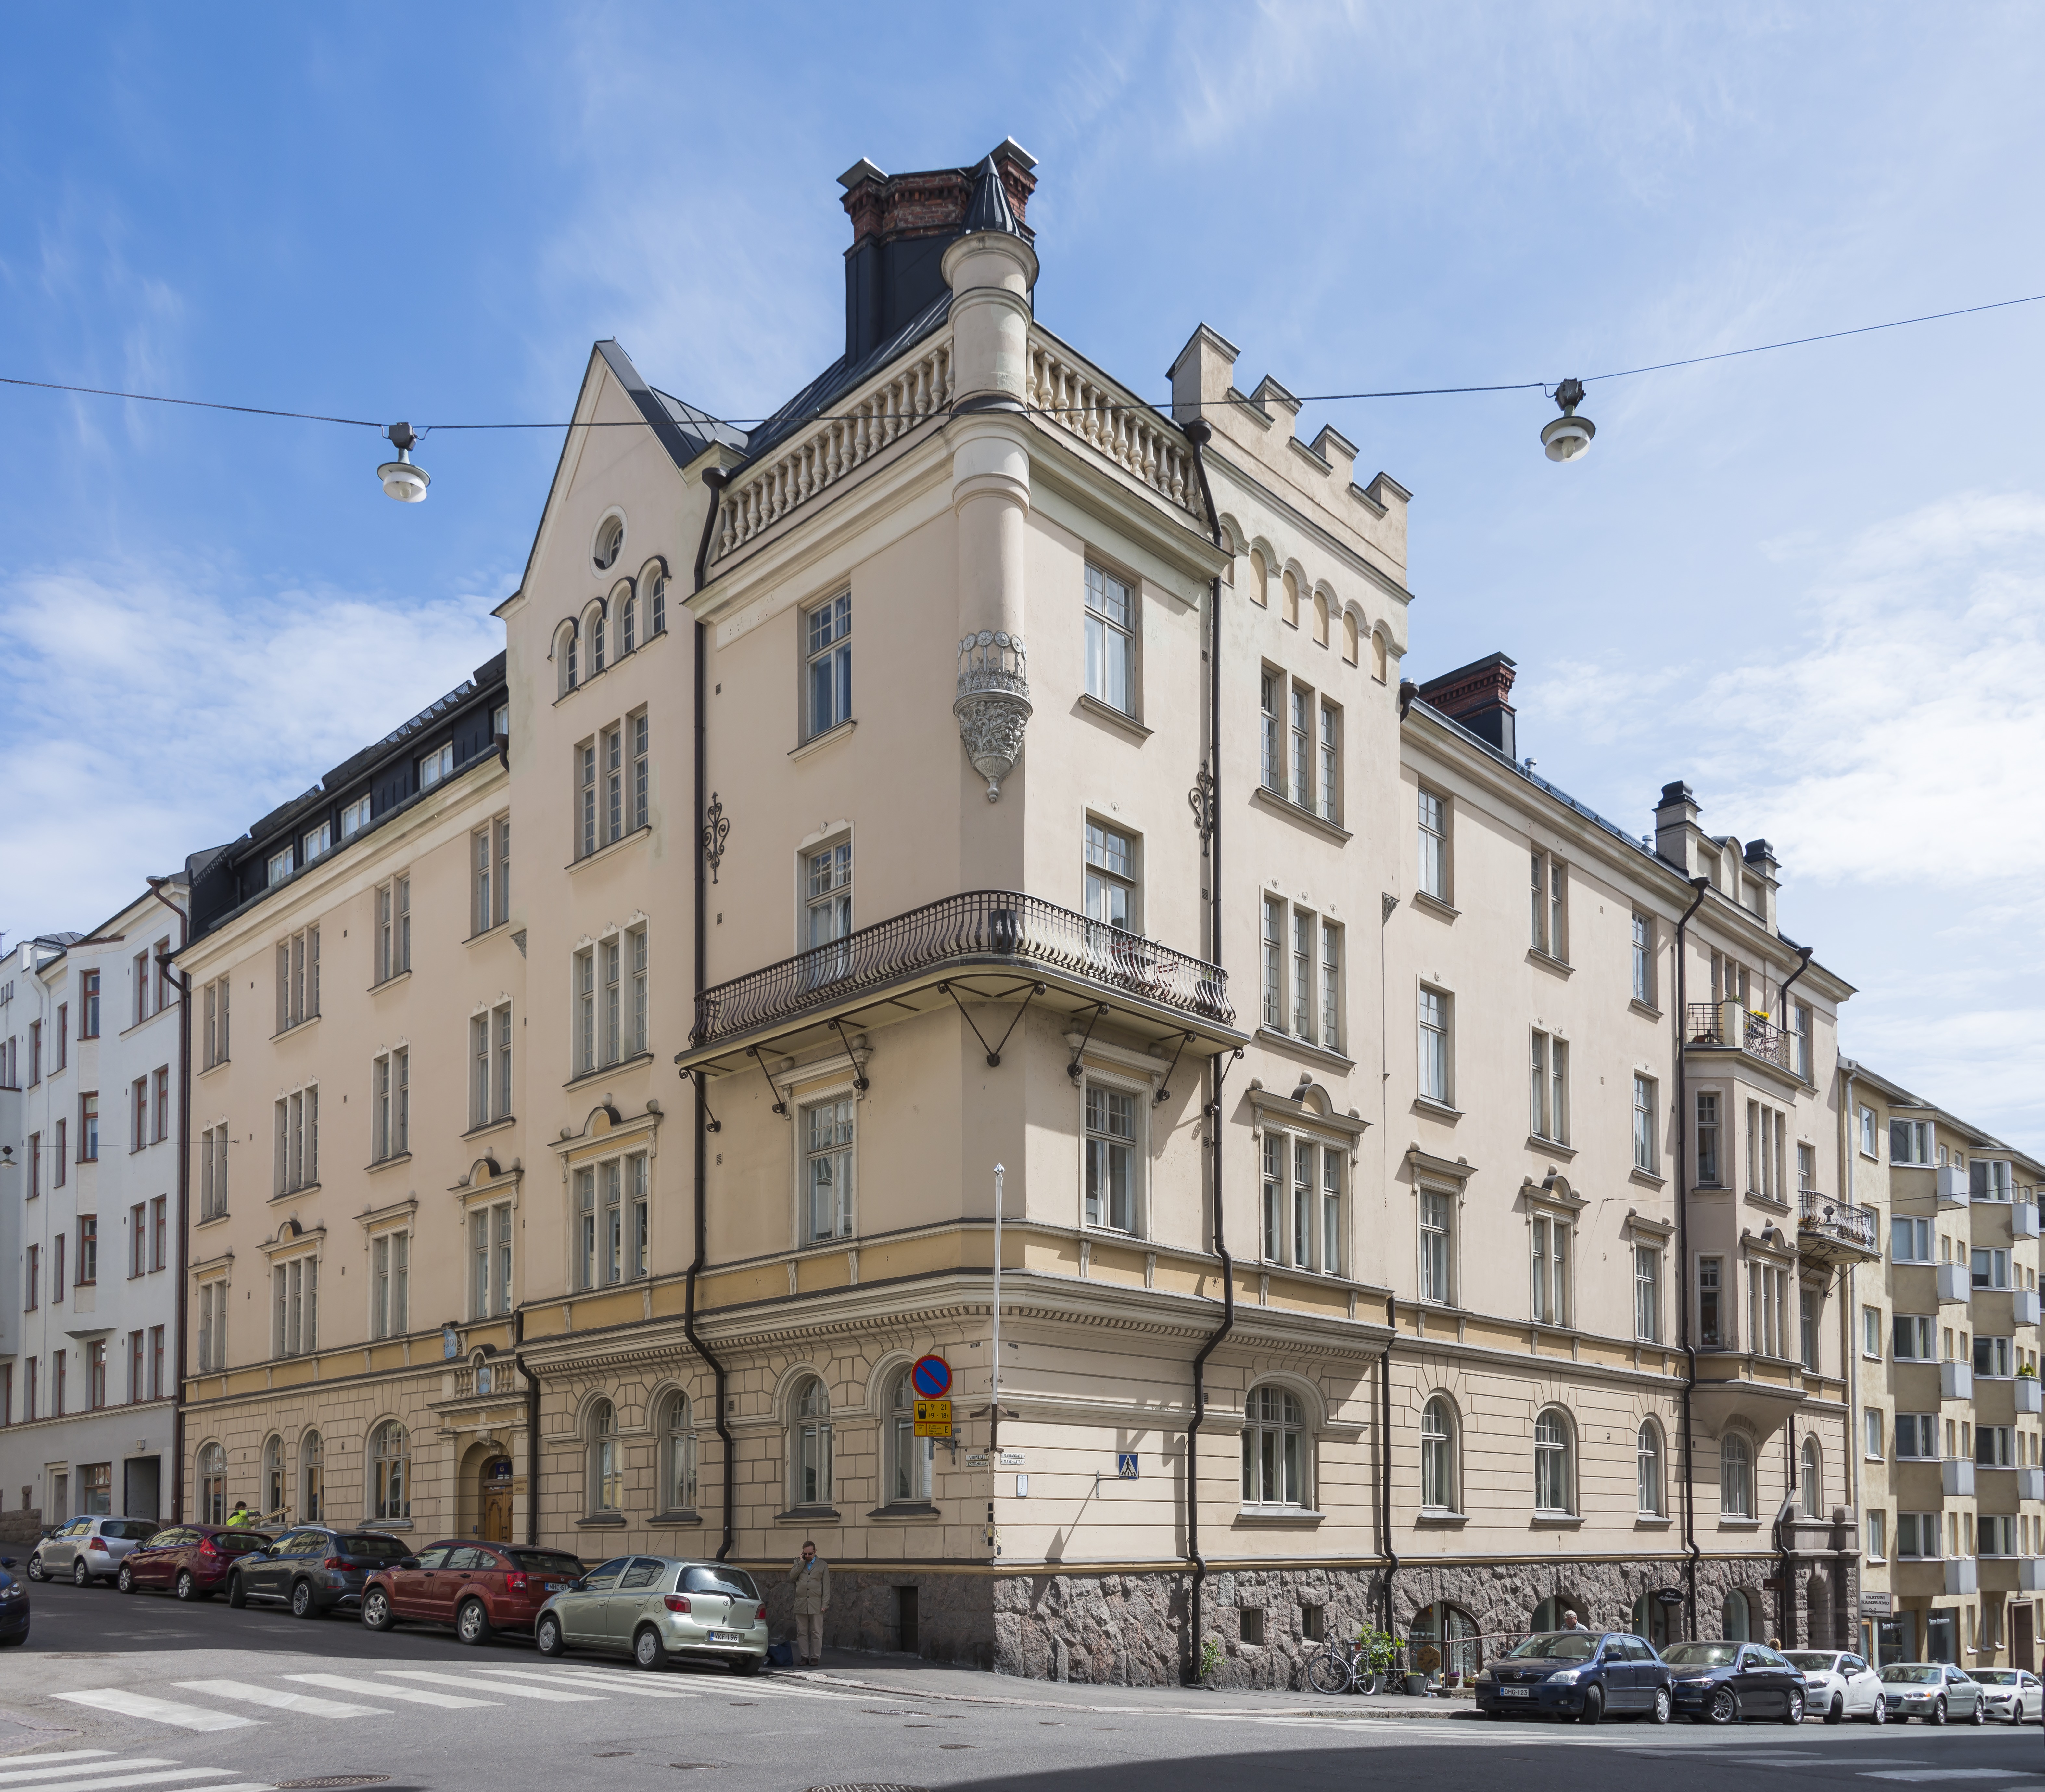 Vironkatu 6 - Mariankatu 15b. Arkkitehtitoimisto Grahn, Hedman & Wasastjernan suunnittelema rakennus vuodelta 1901.